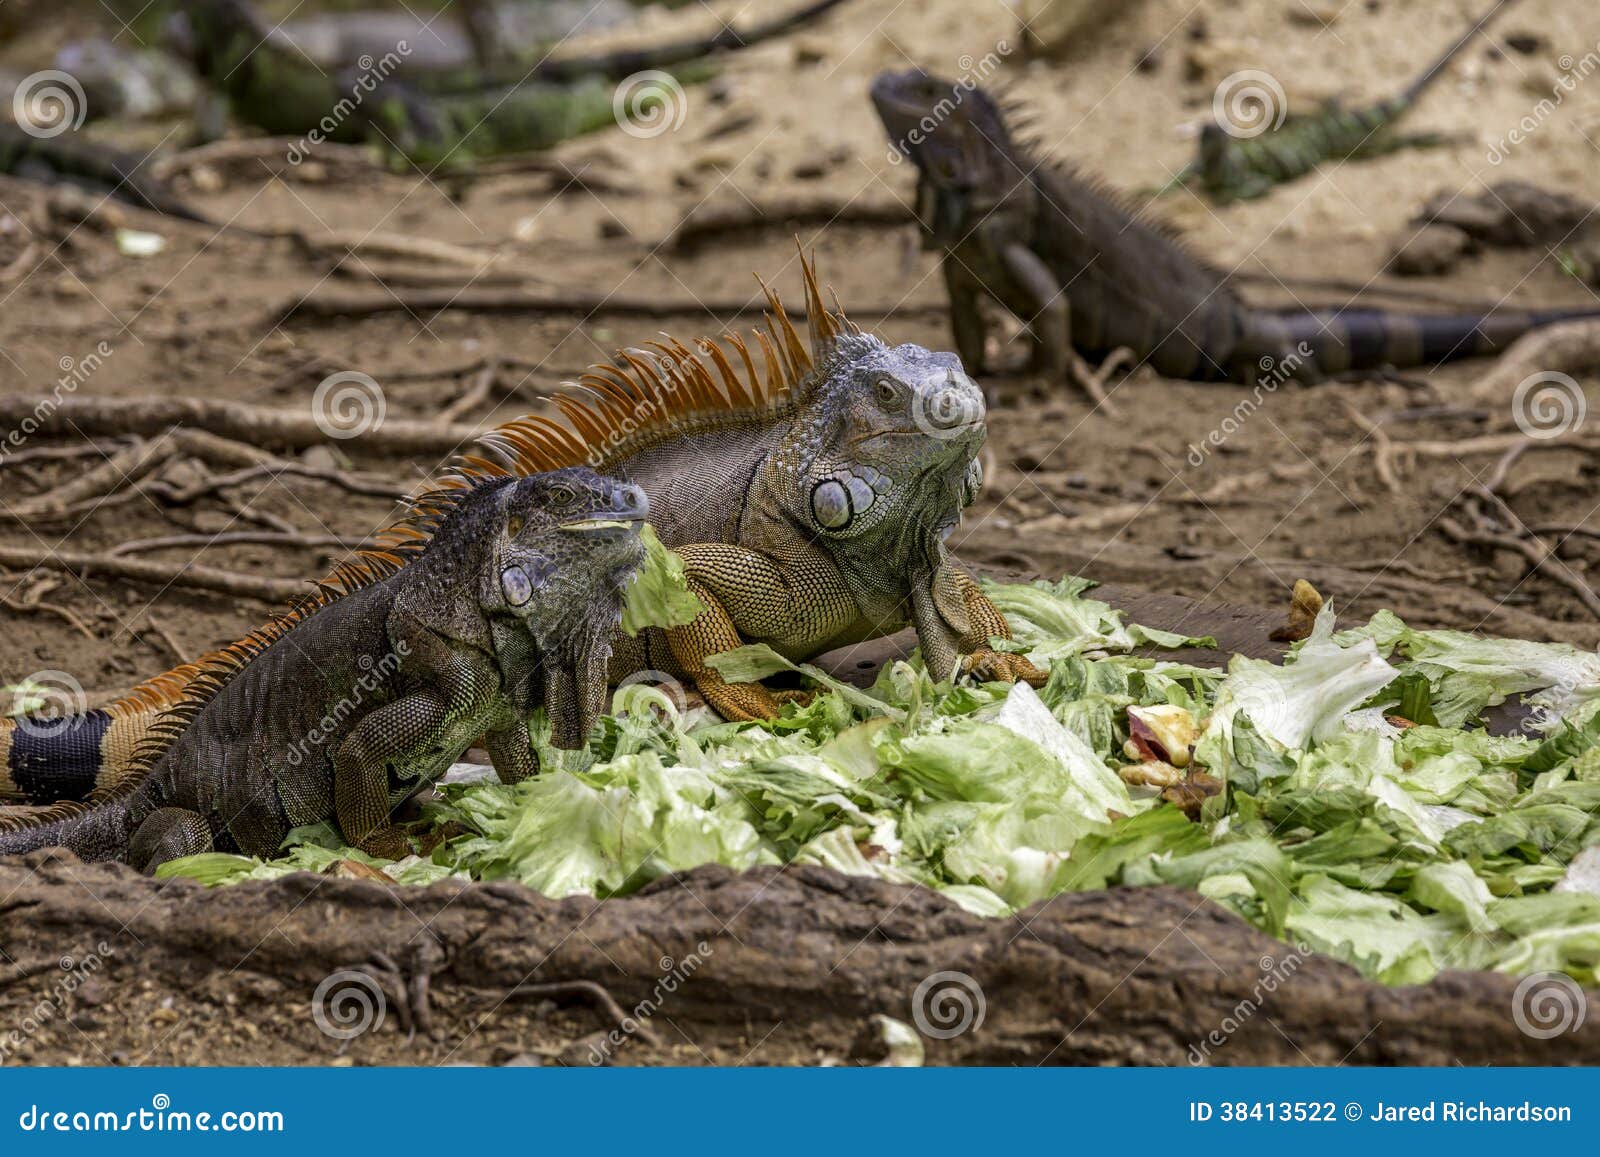 iguana que comen